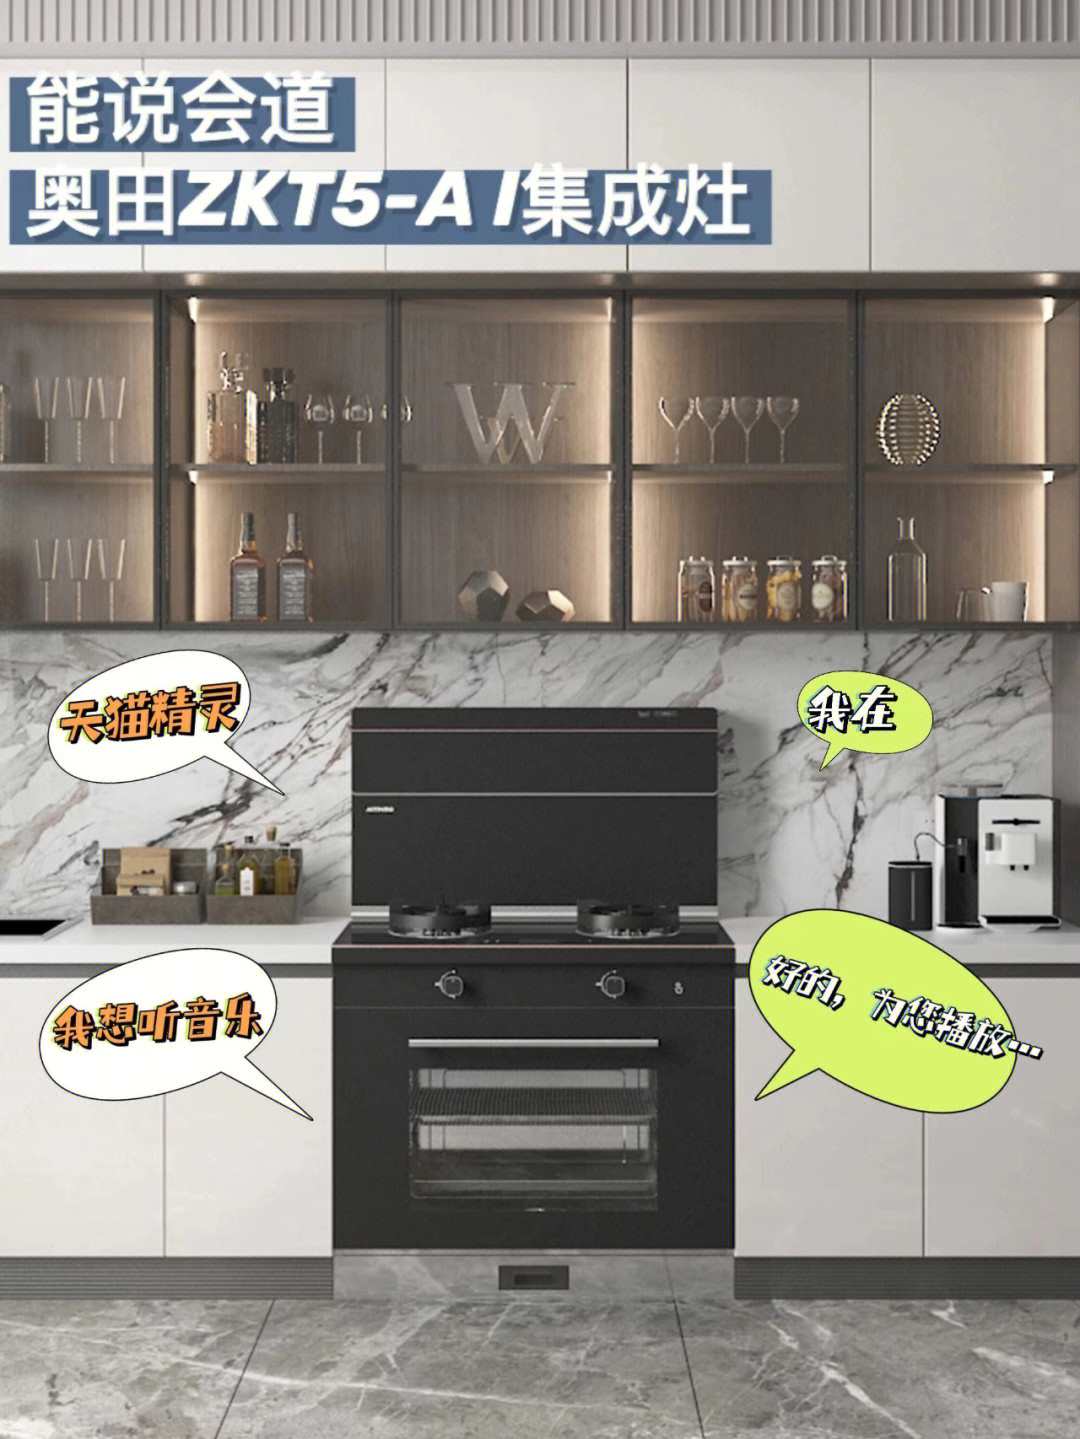 奥田zkt5ai集成灶丨能说会道的厨房电器